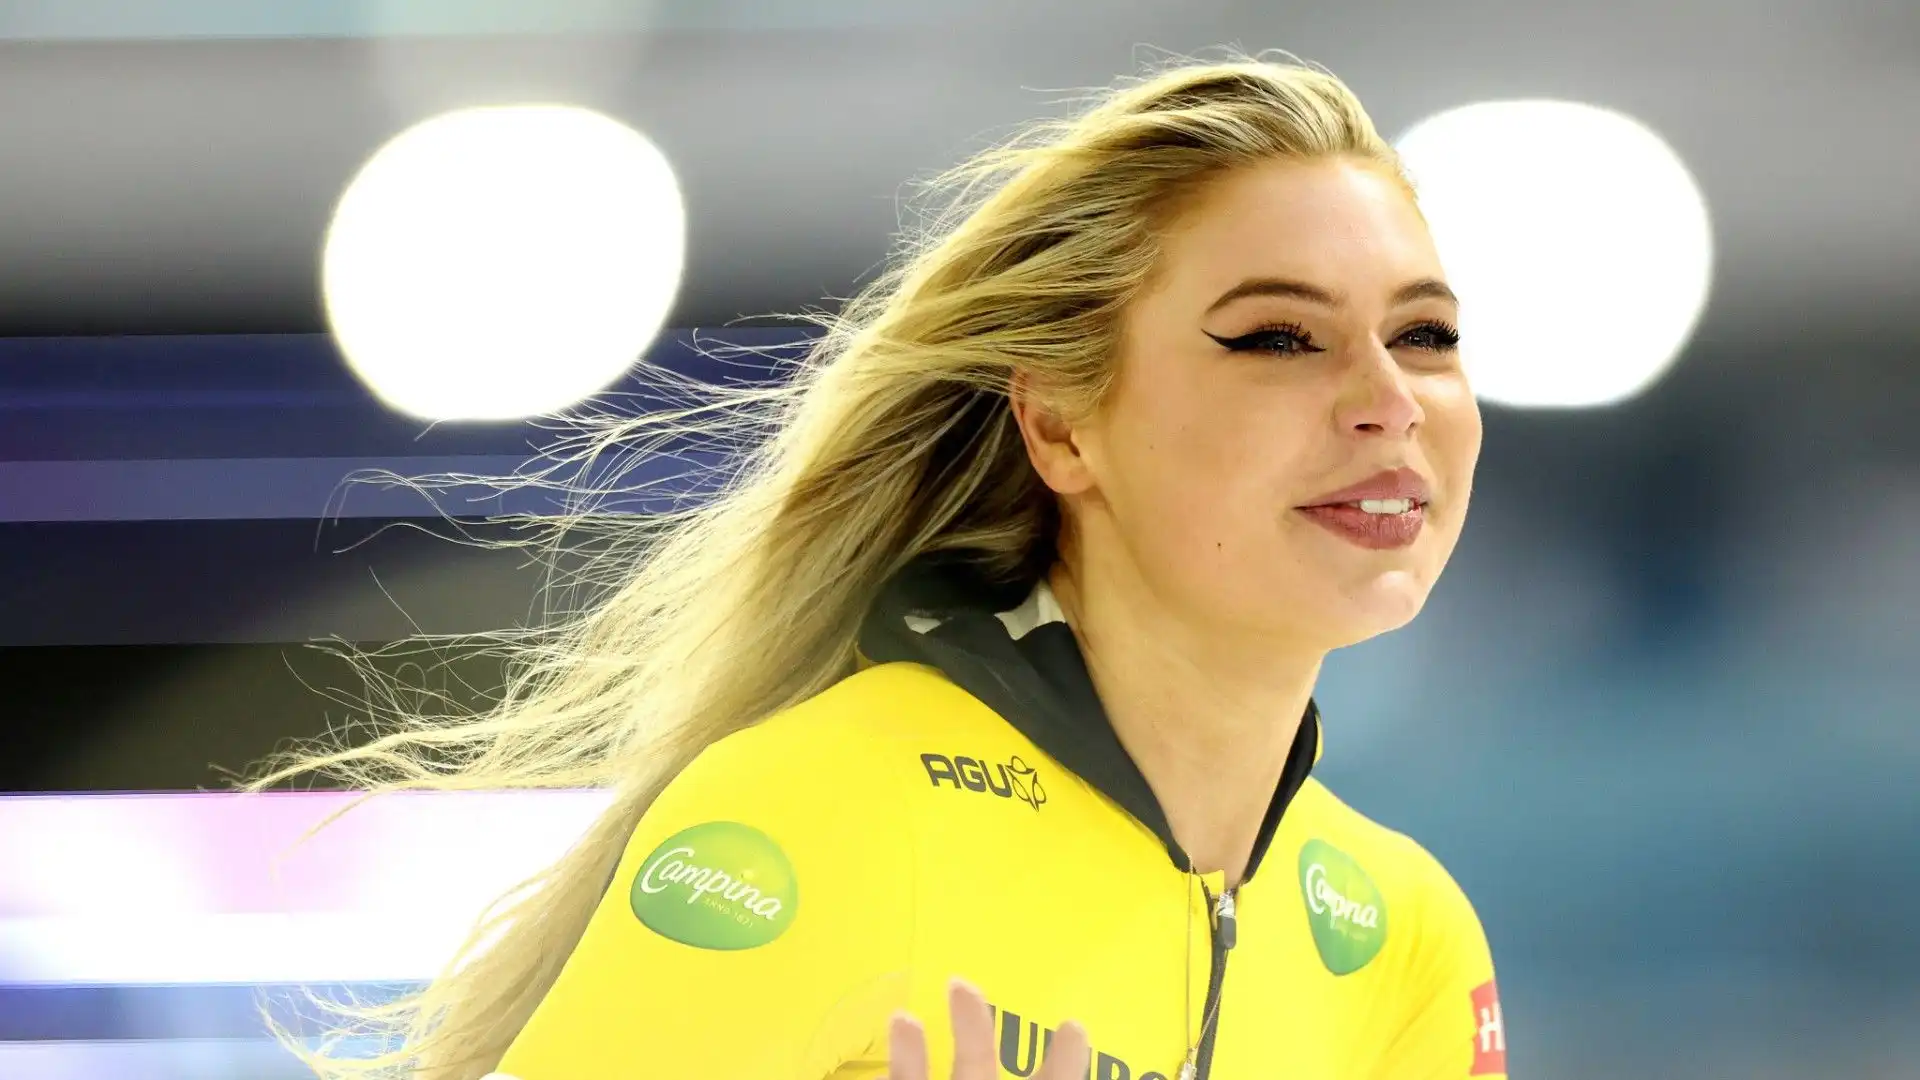 Leerdam è diventata campionessa del Mondo juniores ai Campionati mondiali di pattinaggio di velocità juniores 2017 a Helsinki